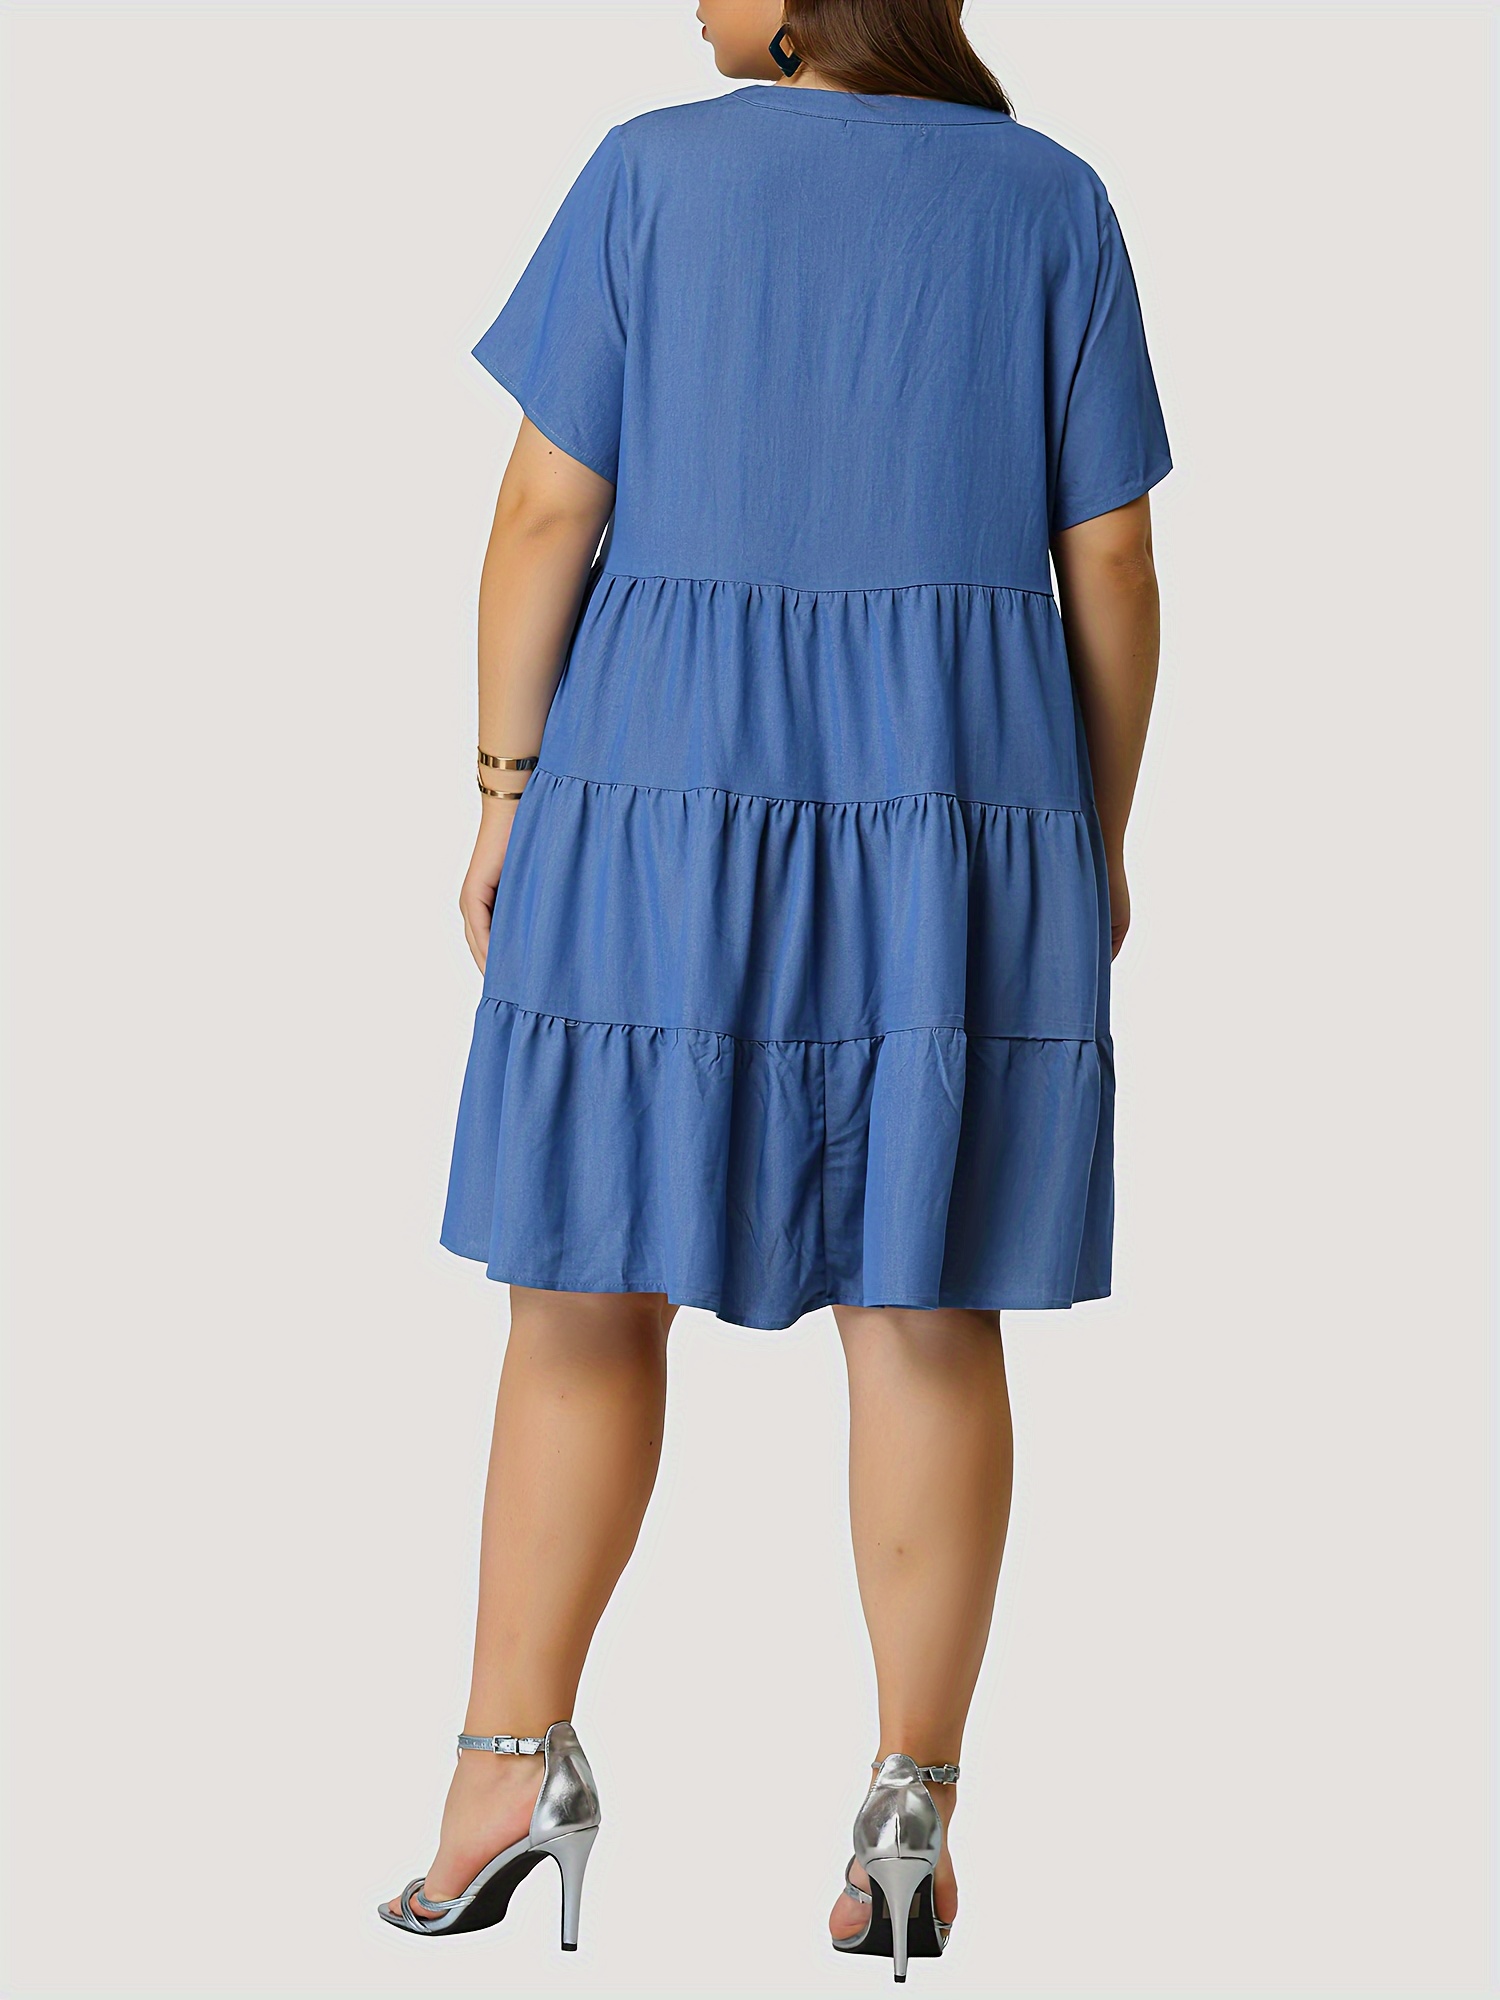 womens denim dress plus size plain washed blue layered ruffled v neck short sleeve single breasted denim dress